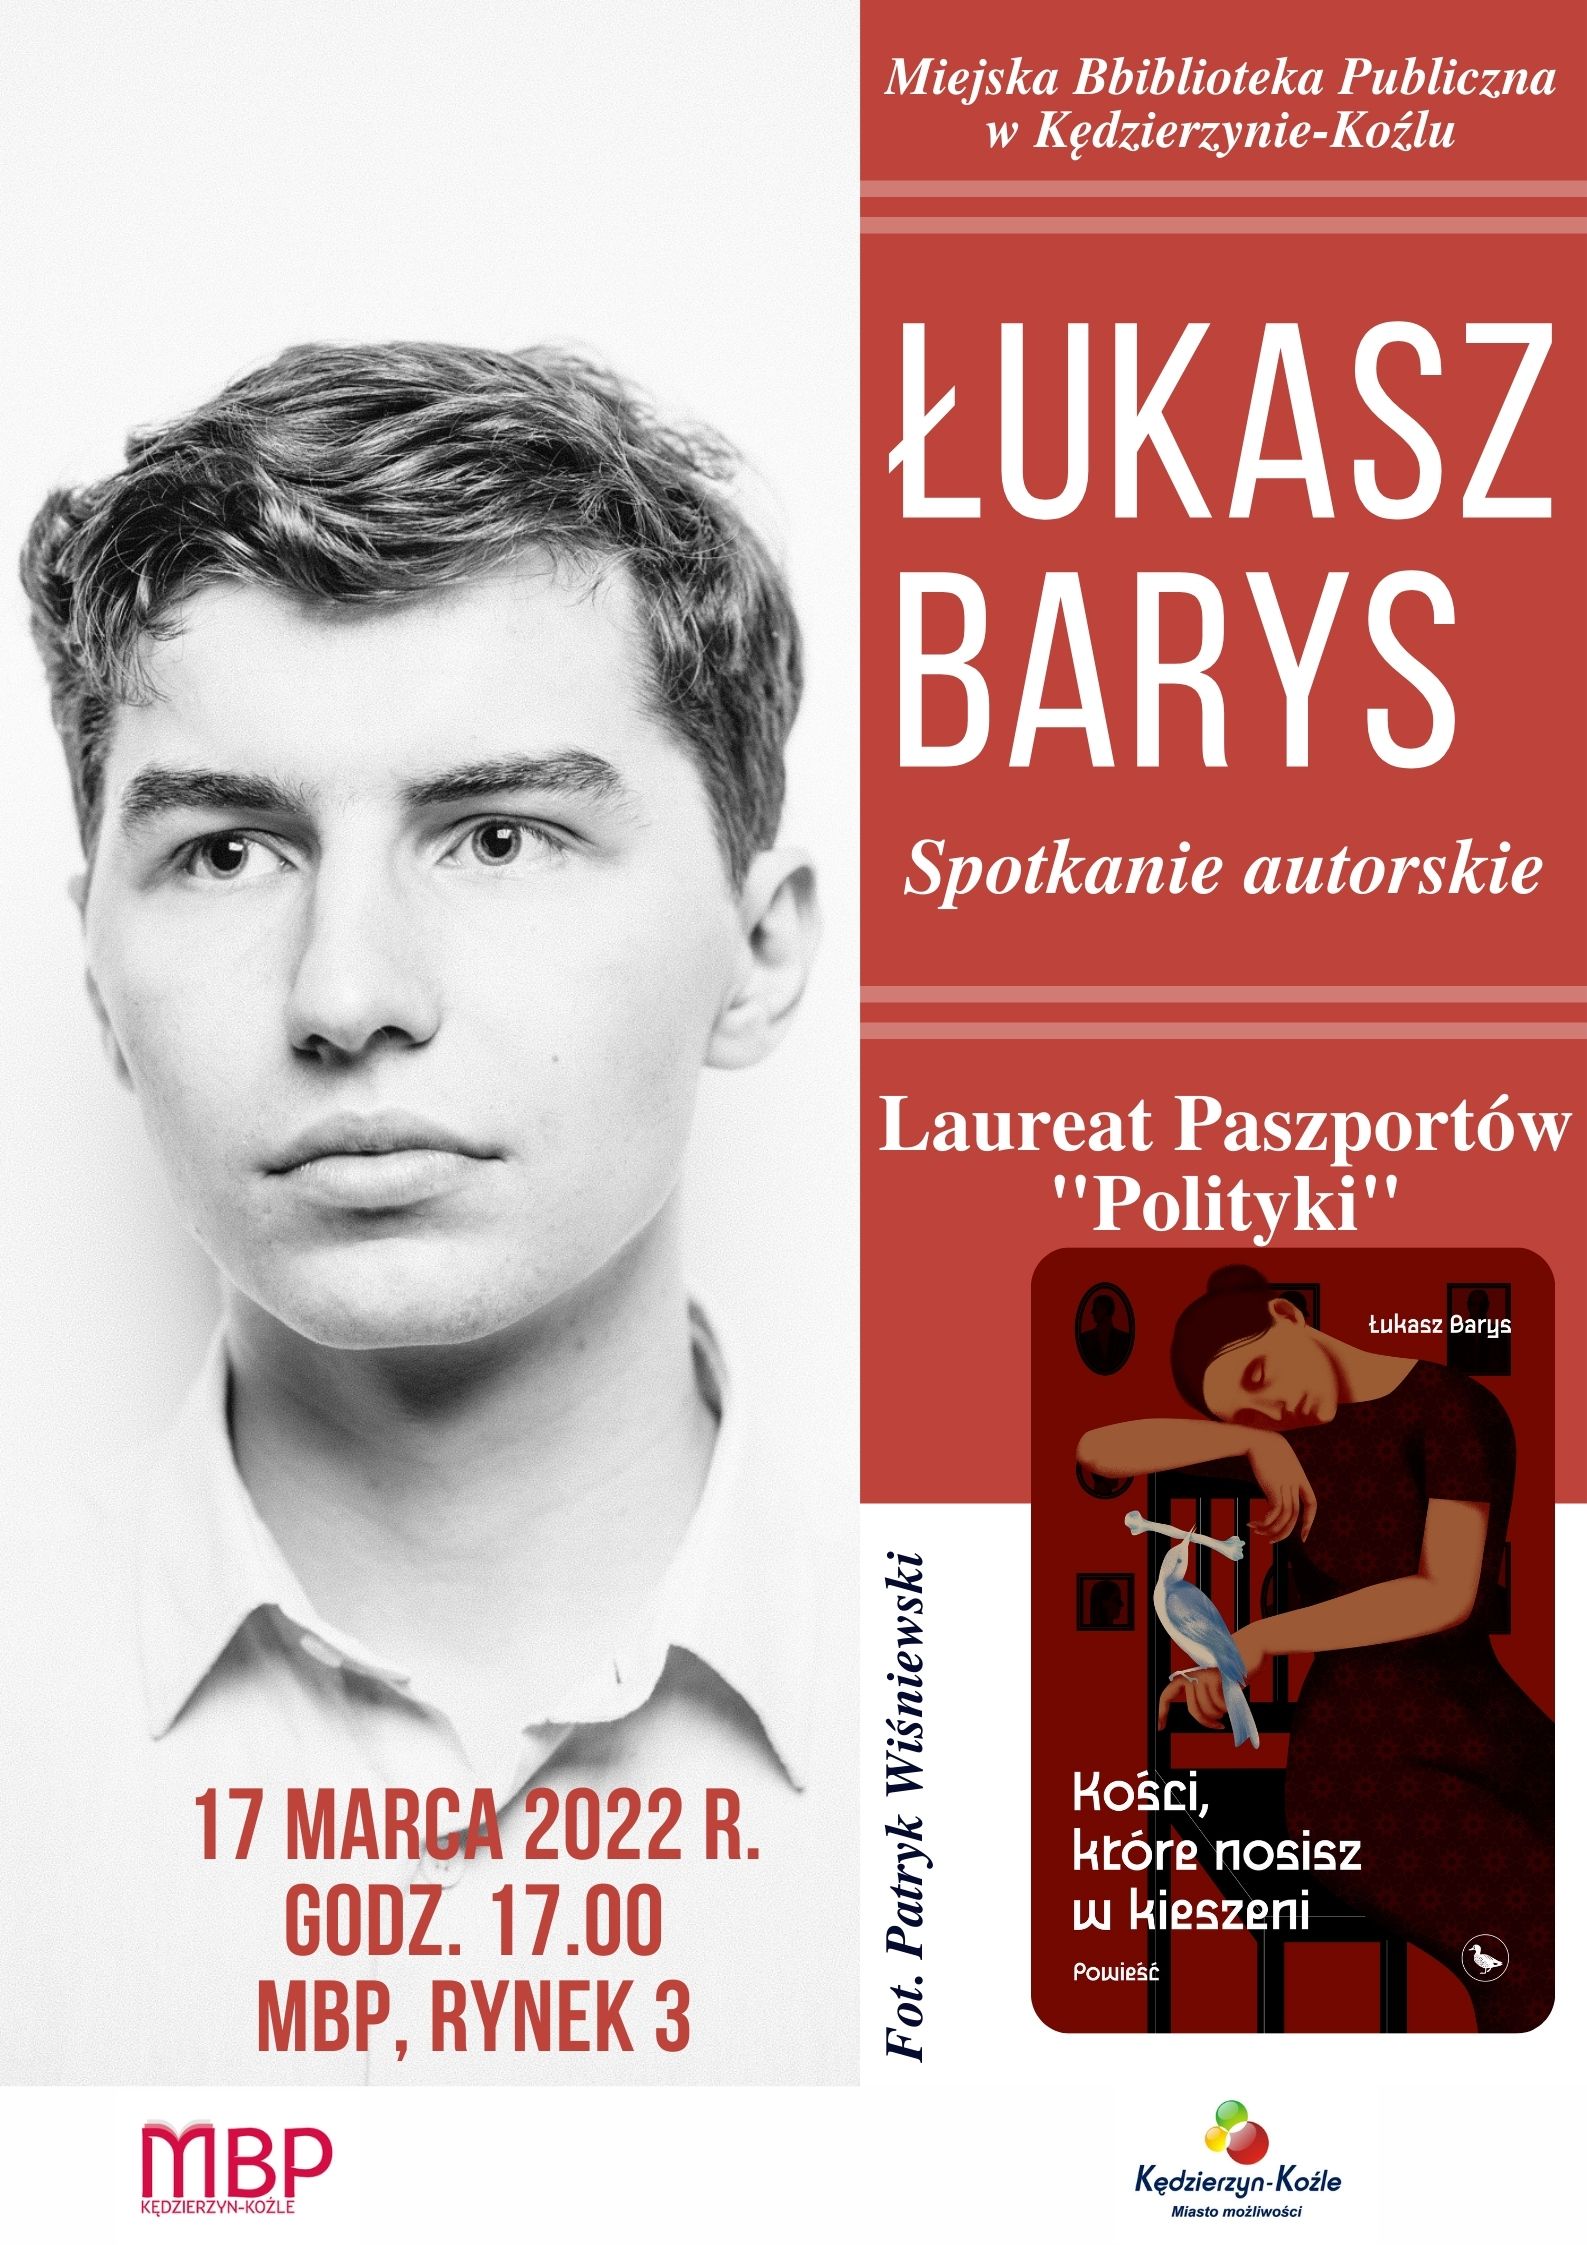 Spotkanie autorskie z Łukaszem Barysem